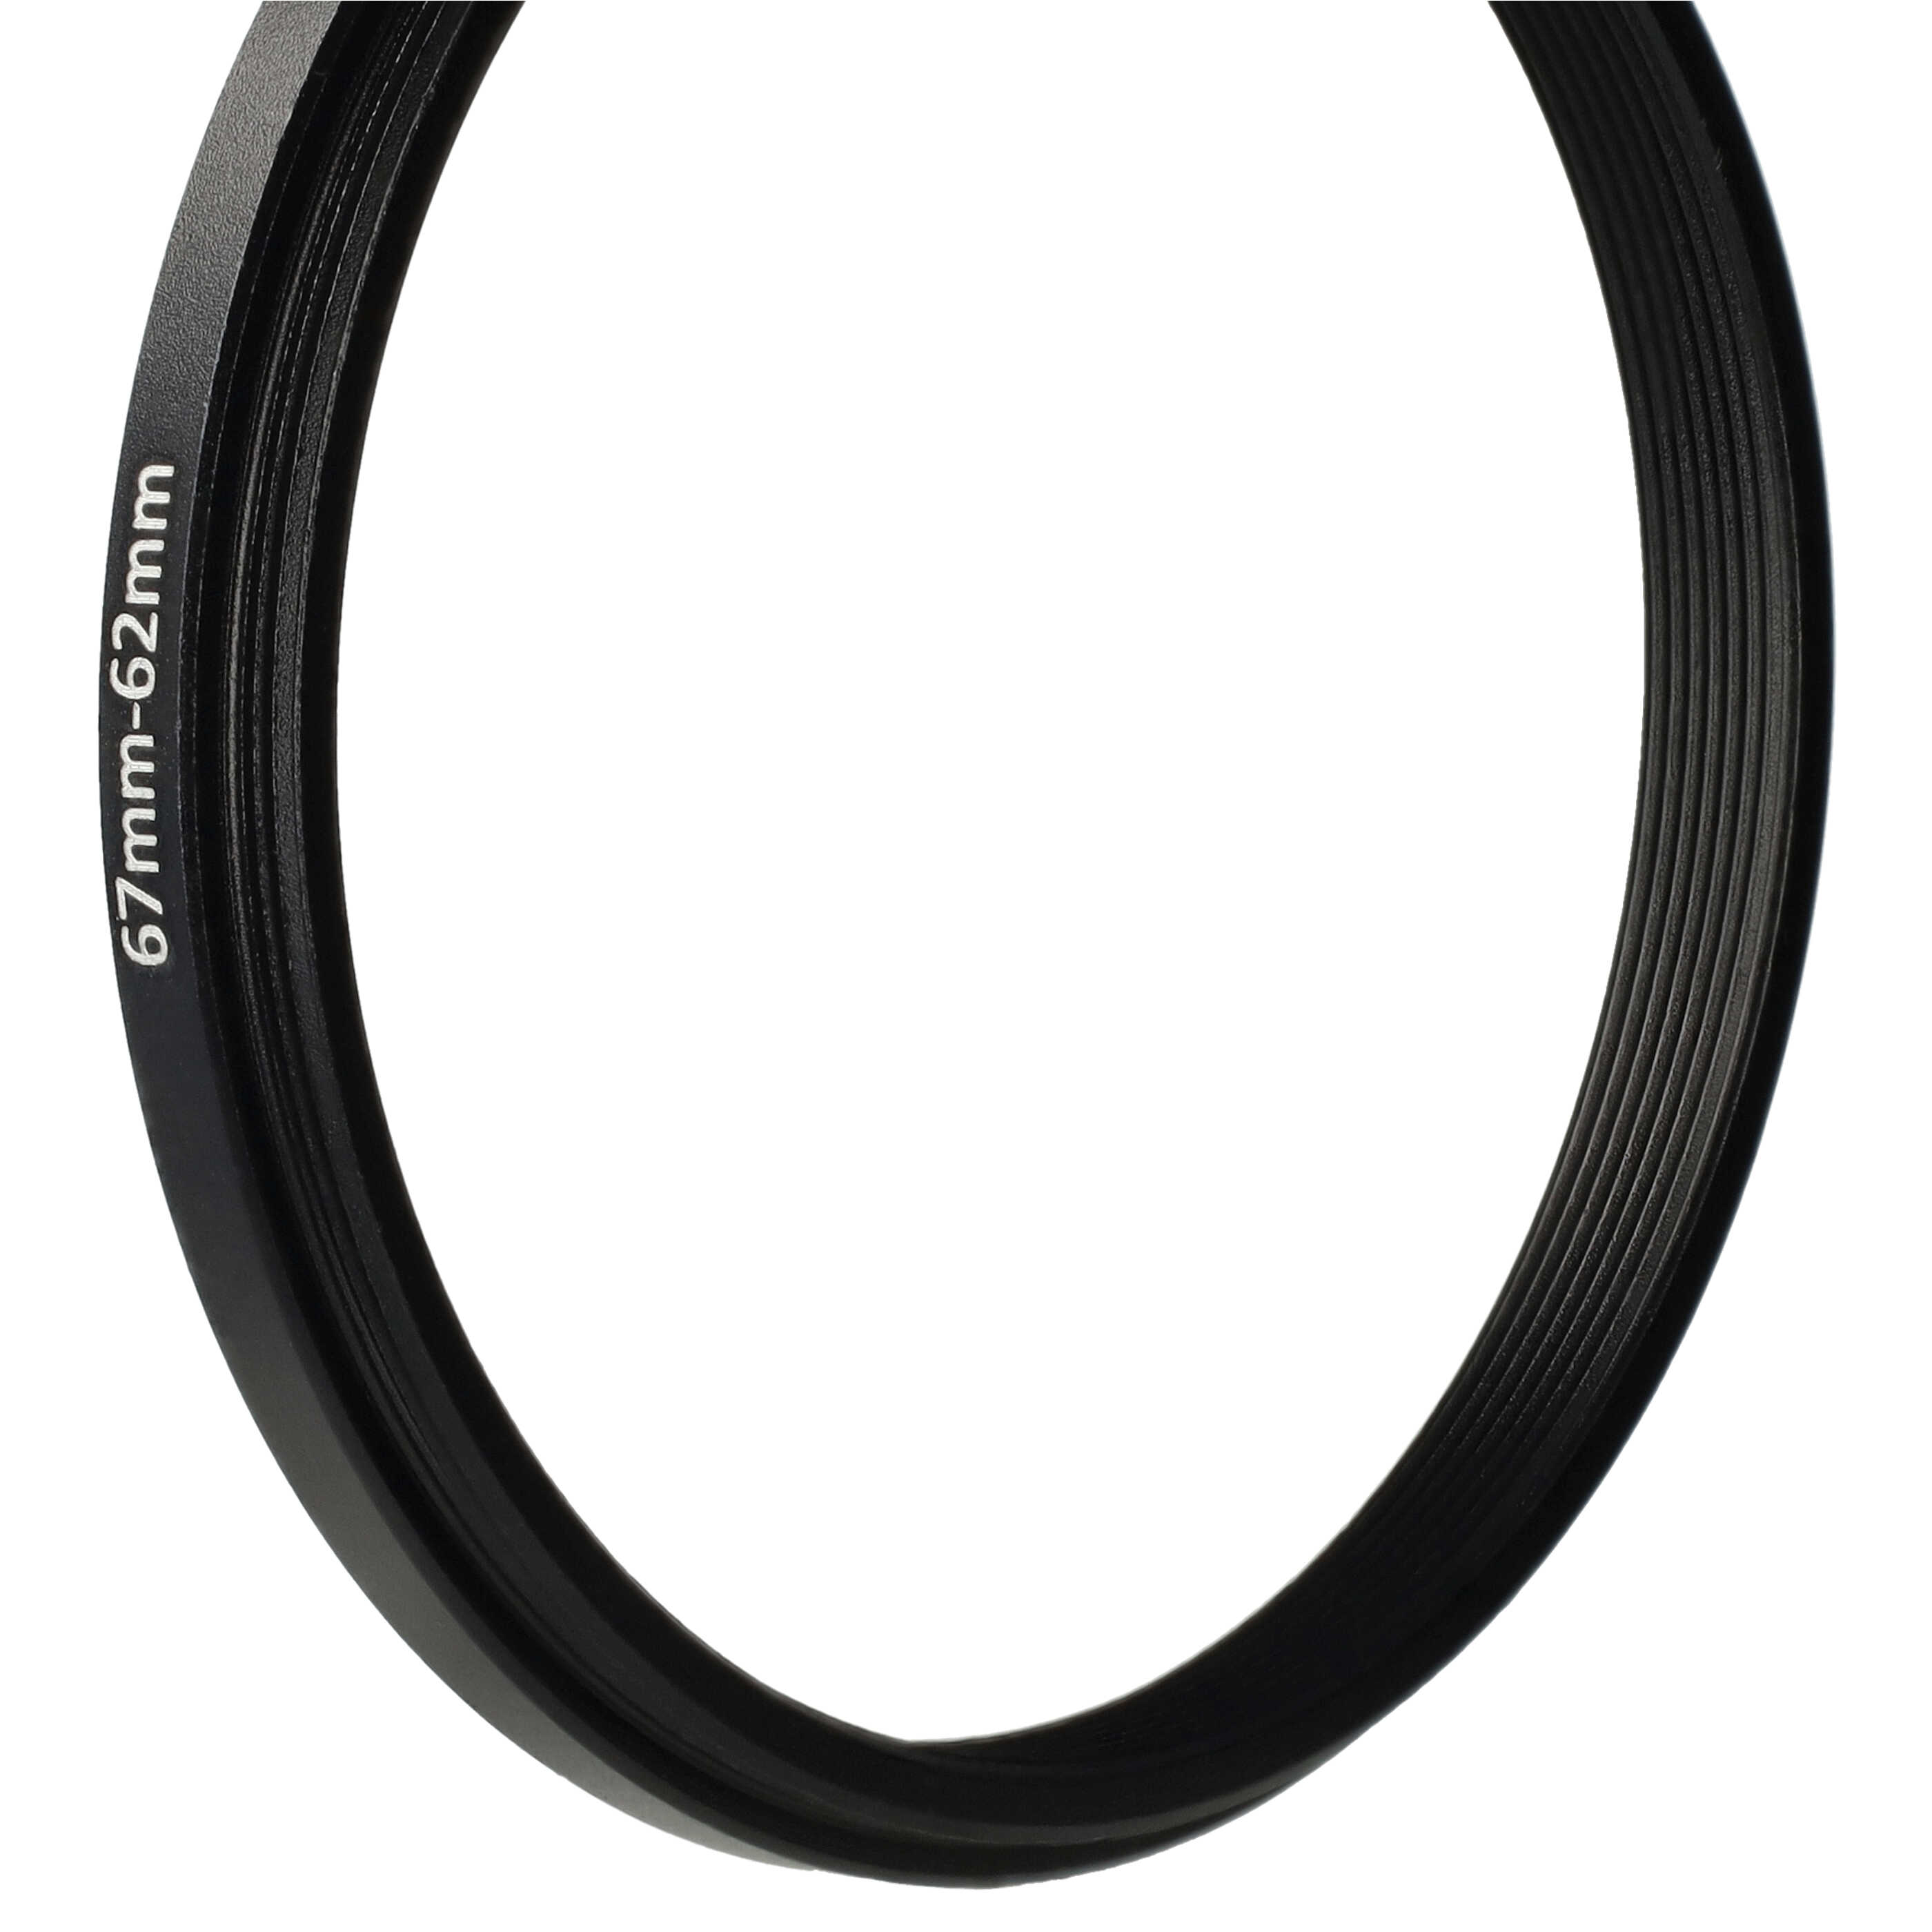 Anello adattatore step-down da 67 mm a 62 mm per obiettivo fotocamera - Adattatore filtro, metallo, nero